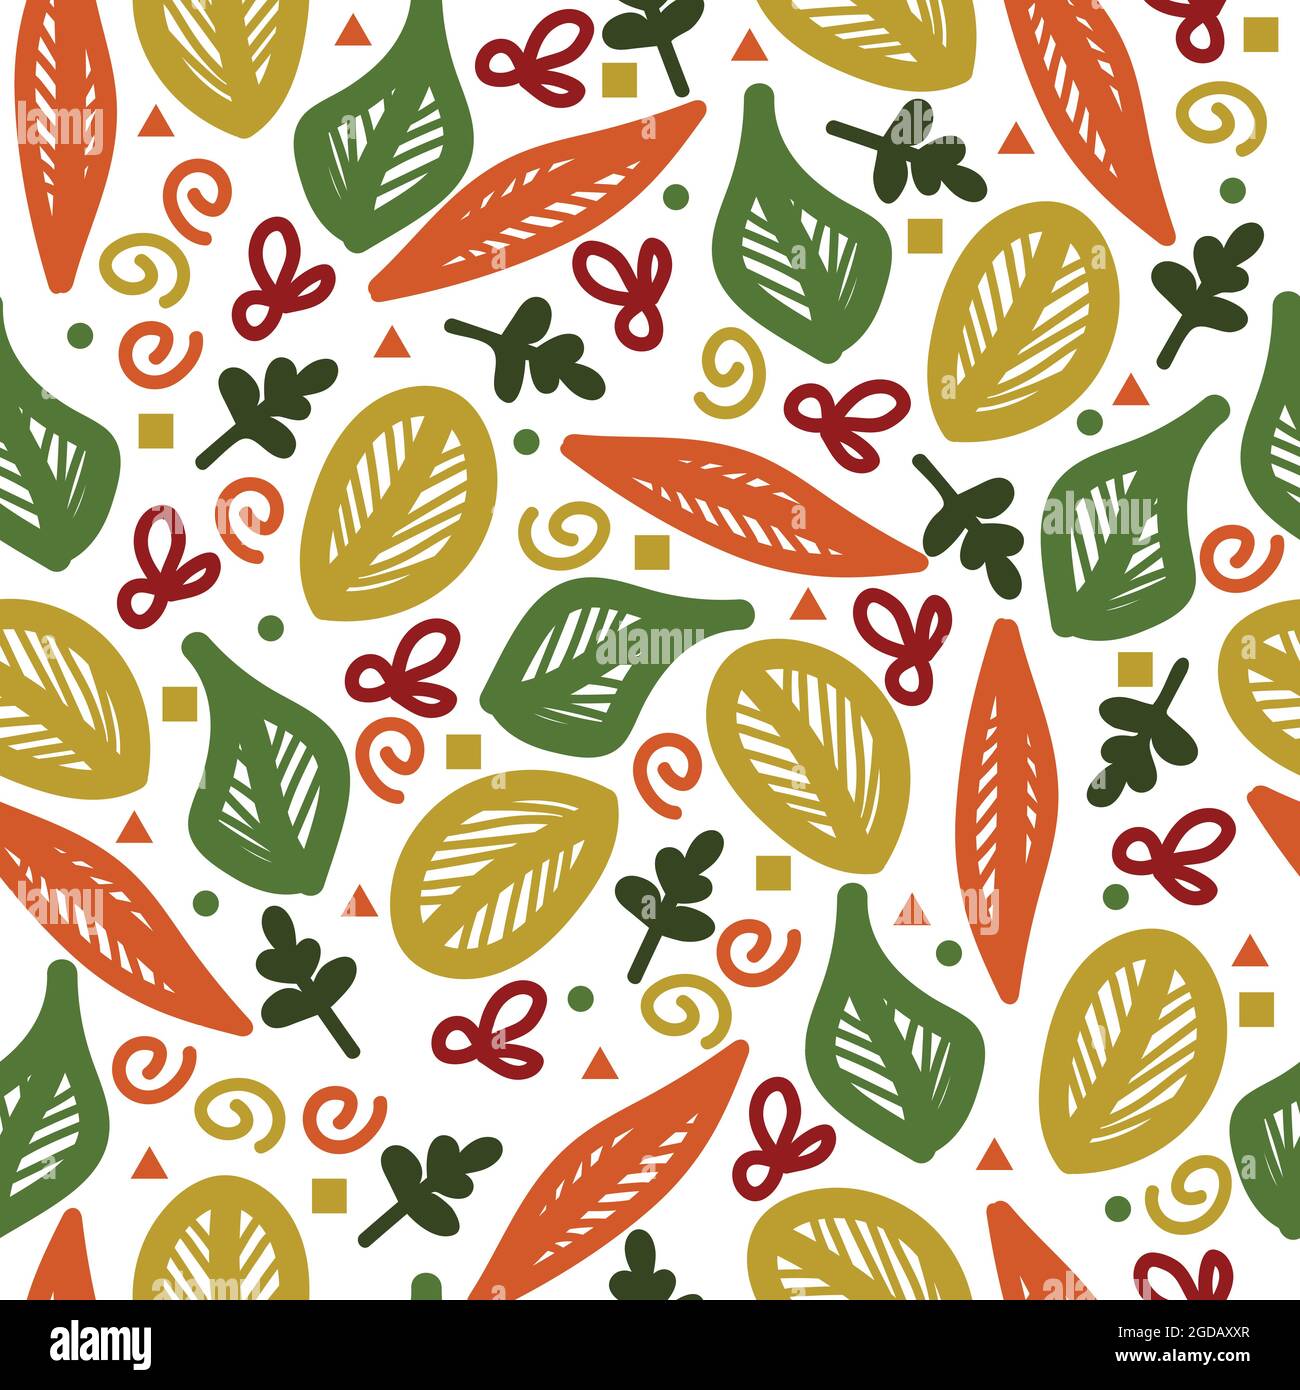 Diseño alegre con hojas abstractas y varias formas decorativas en colores otoñales sobre un fondo transparente Ilustración del Vector